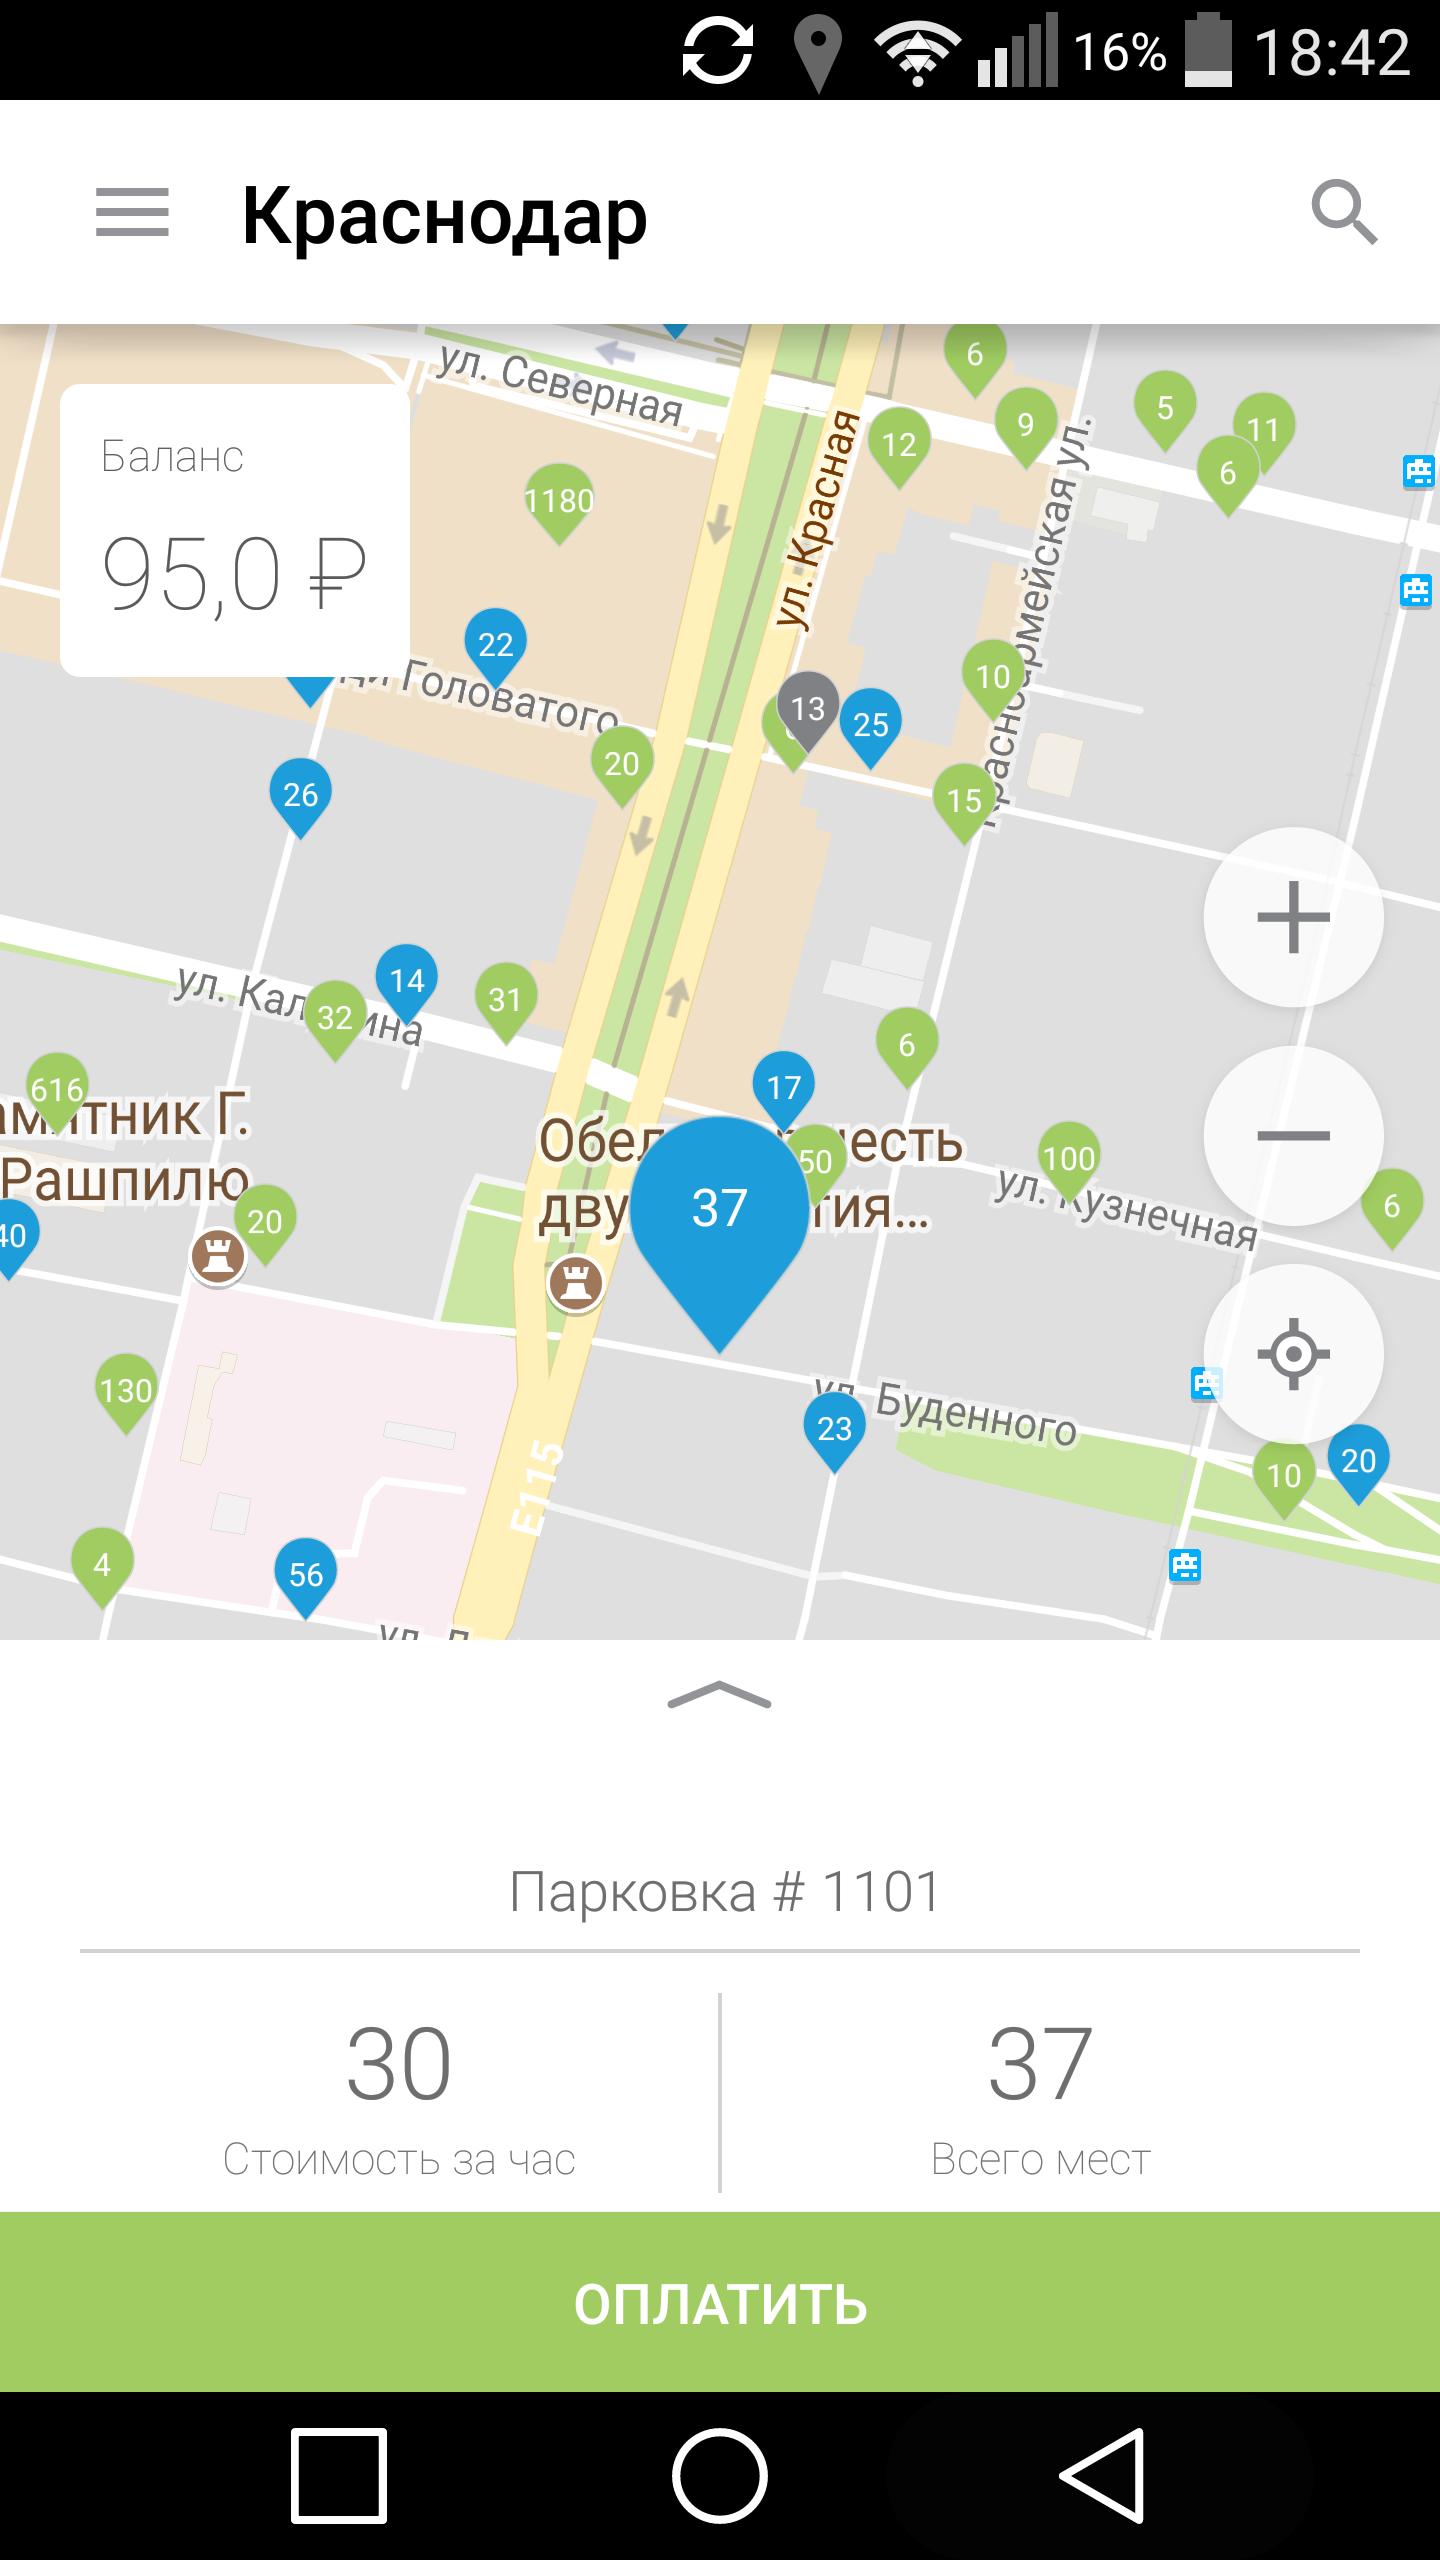 Просмотр местоположения. Геолокация Краснодар. Скриншот местоположение Краснодар. Оплатить парковку в Краснодаре. Краснодар местоположение.